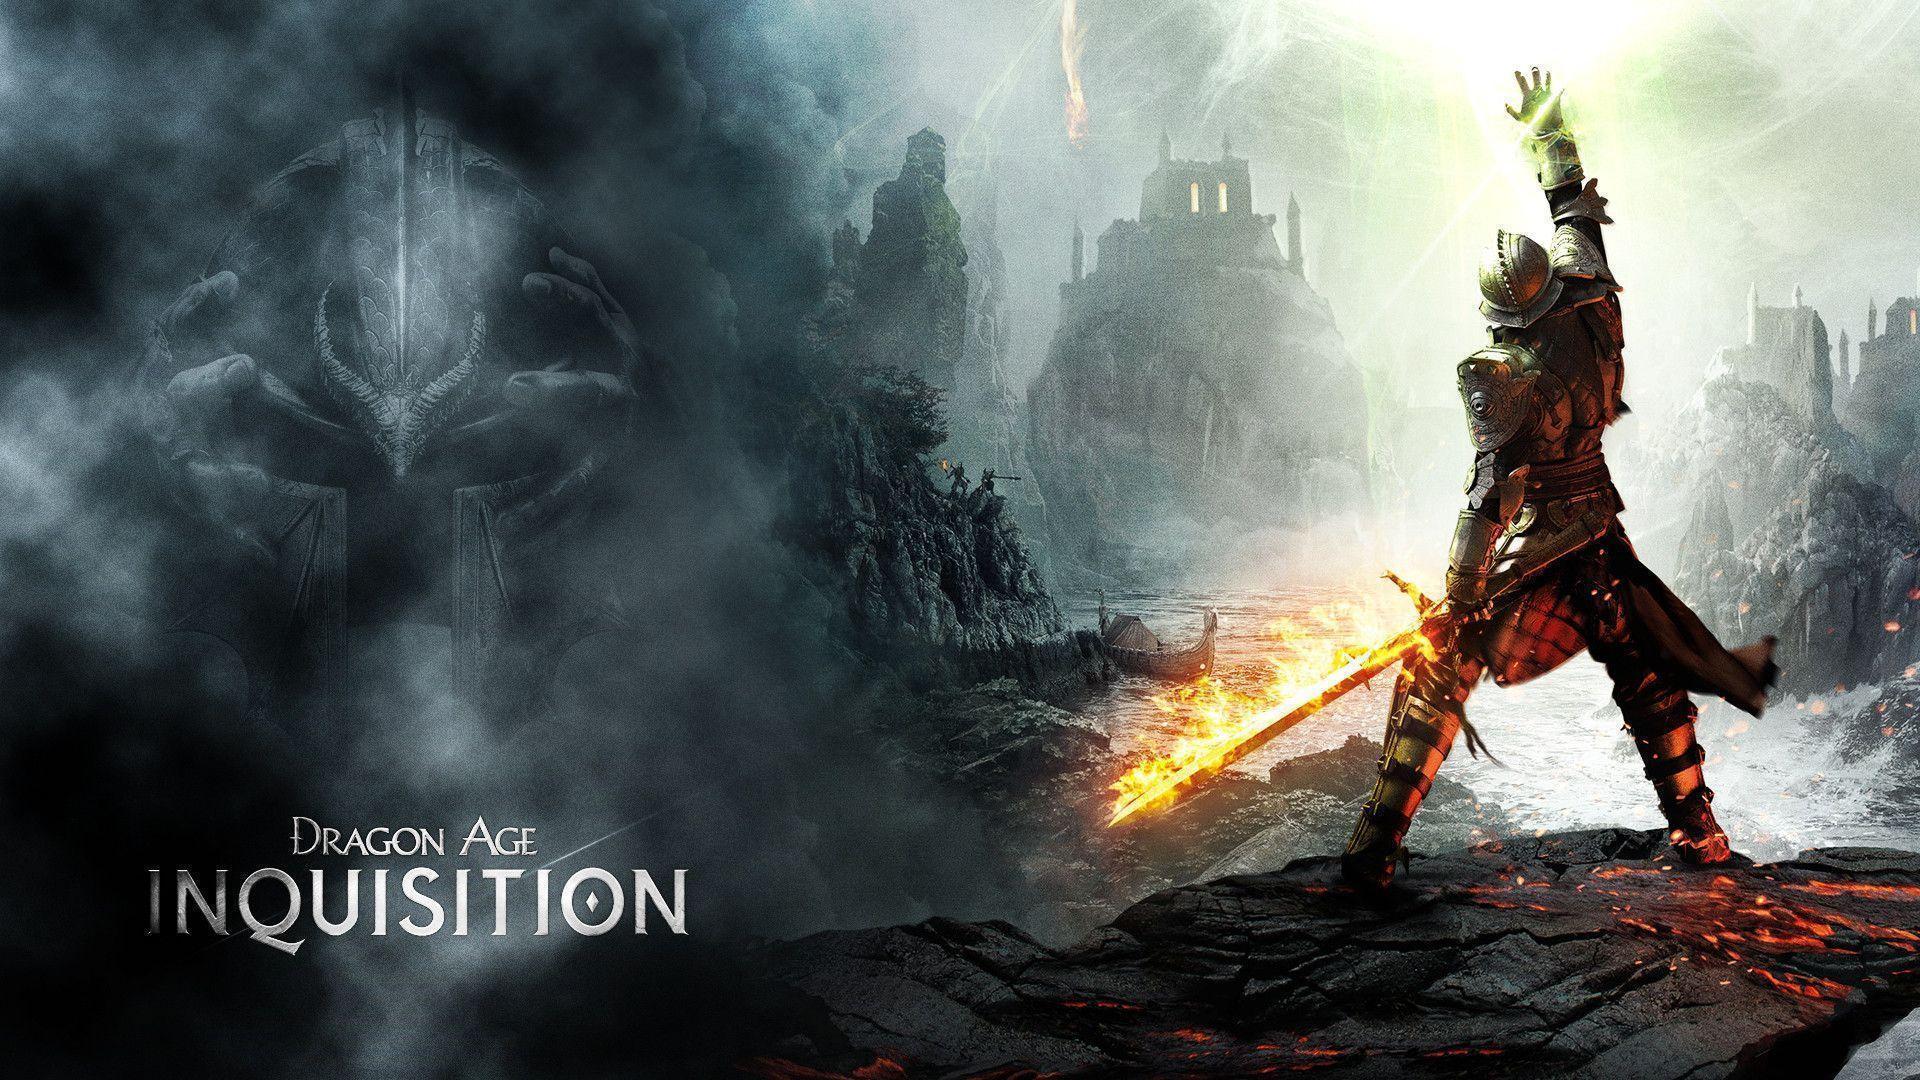 Dragon Age: Inquisition HD Wallpaper. TanukinoSippo